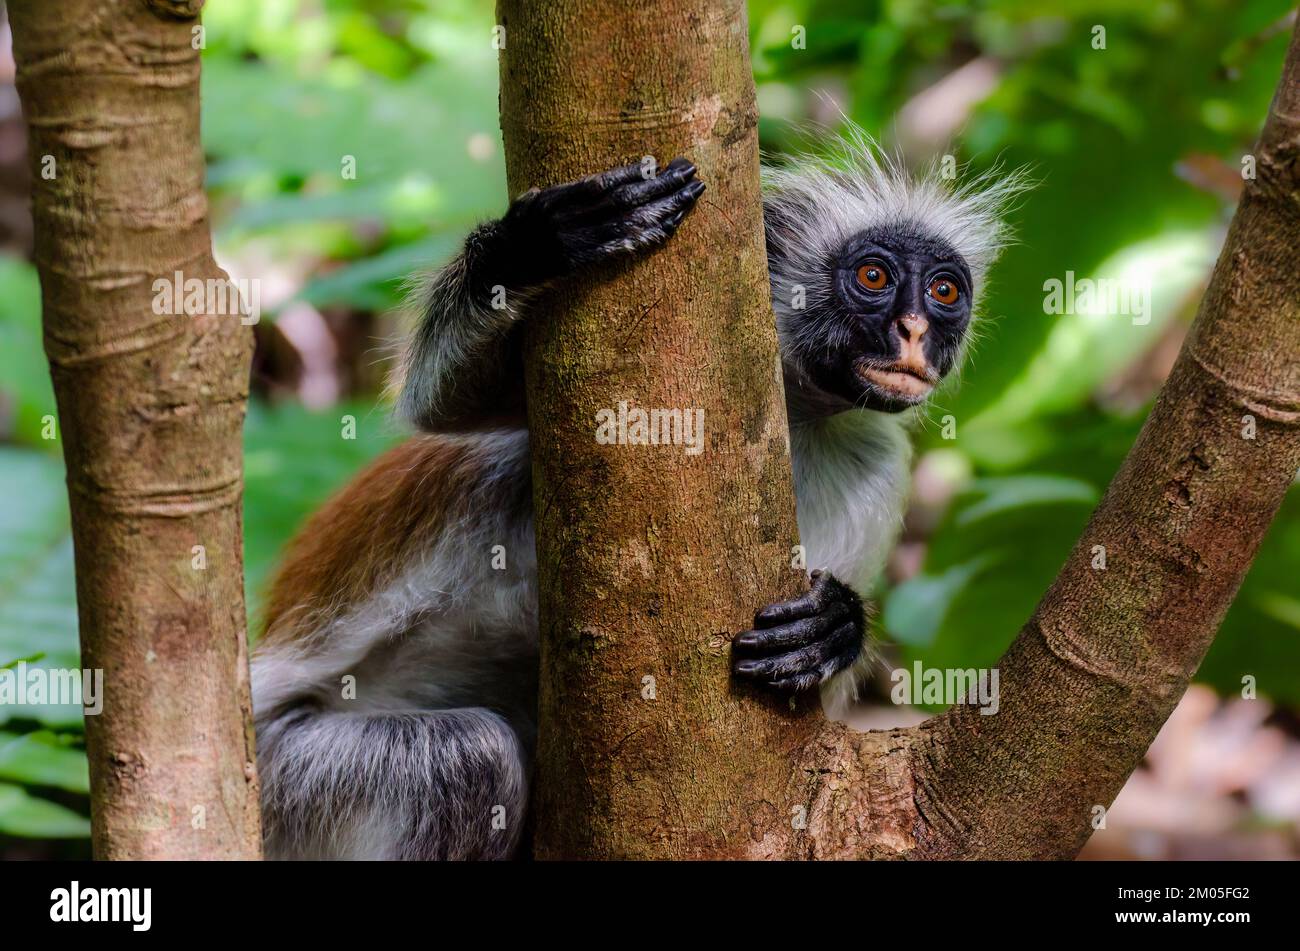 Scimmia colobus rossa adulta fotografata nella foresta di Jozani, Zanzibar. Questa specie di guenone è endemica di questa isola ed è in pericolo di estinzione. Foto Stock